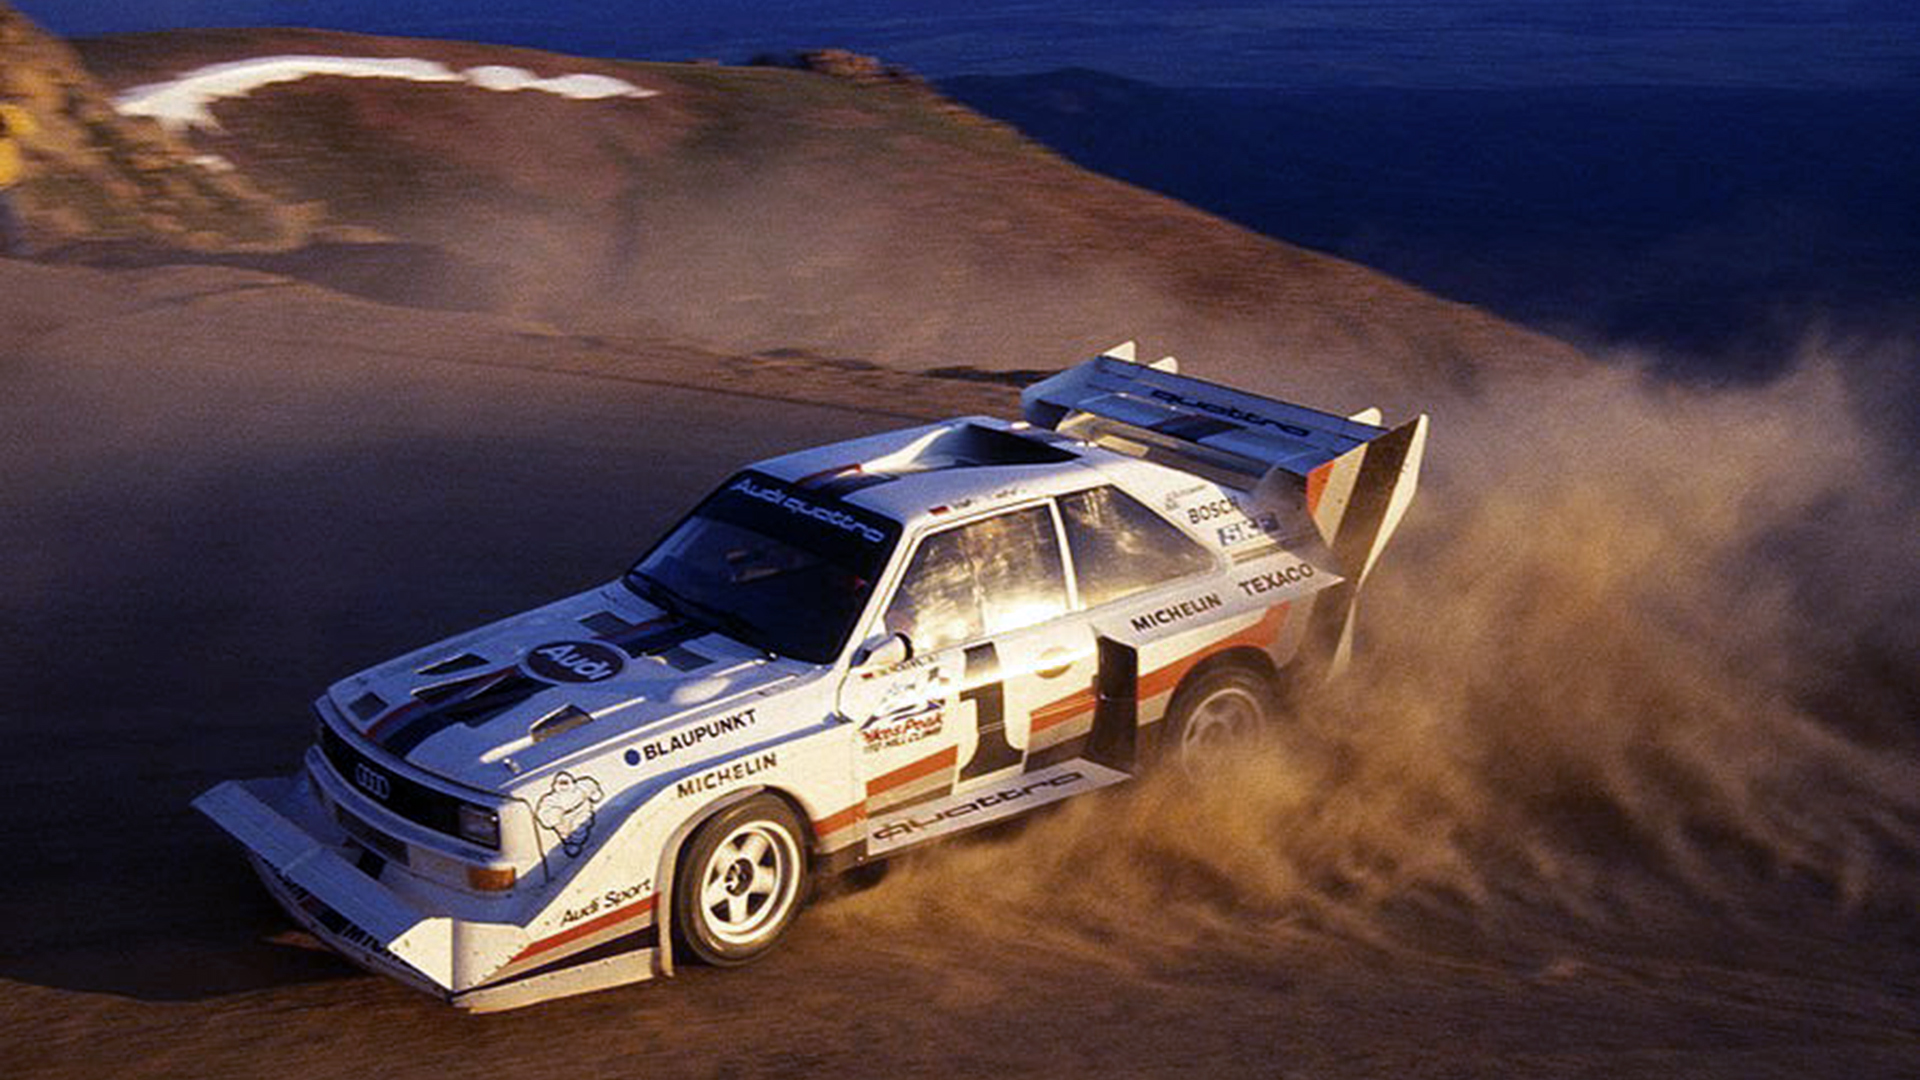 La despedida del Audi Quattro fue en la trepada Pikes Peak de 1987, con un aplastante triunfo de Walter Röhrl